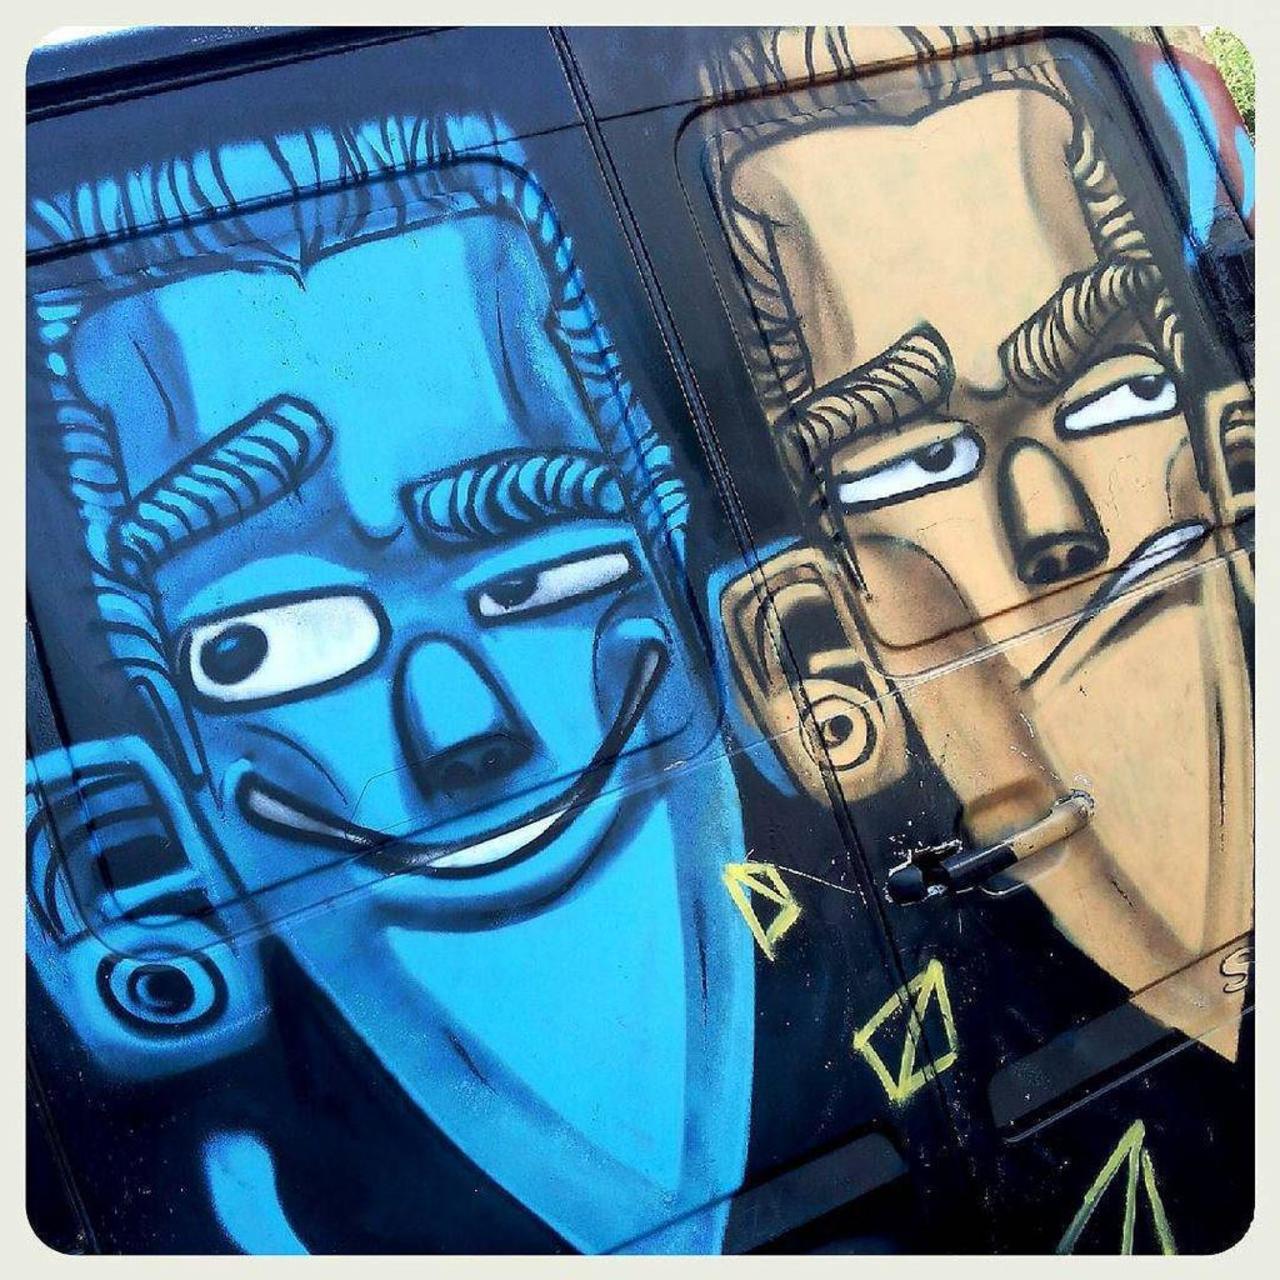 #streearteverywhere #streetart #graffiti #urbanwalls #urbanart #instagraffiti #instagraff … http://ift.tt/1N0dyGl http://t.co/bhiM3qjn8g